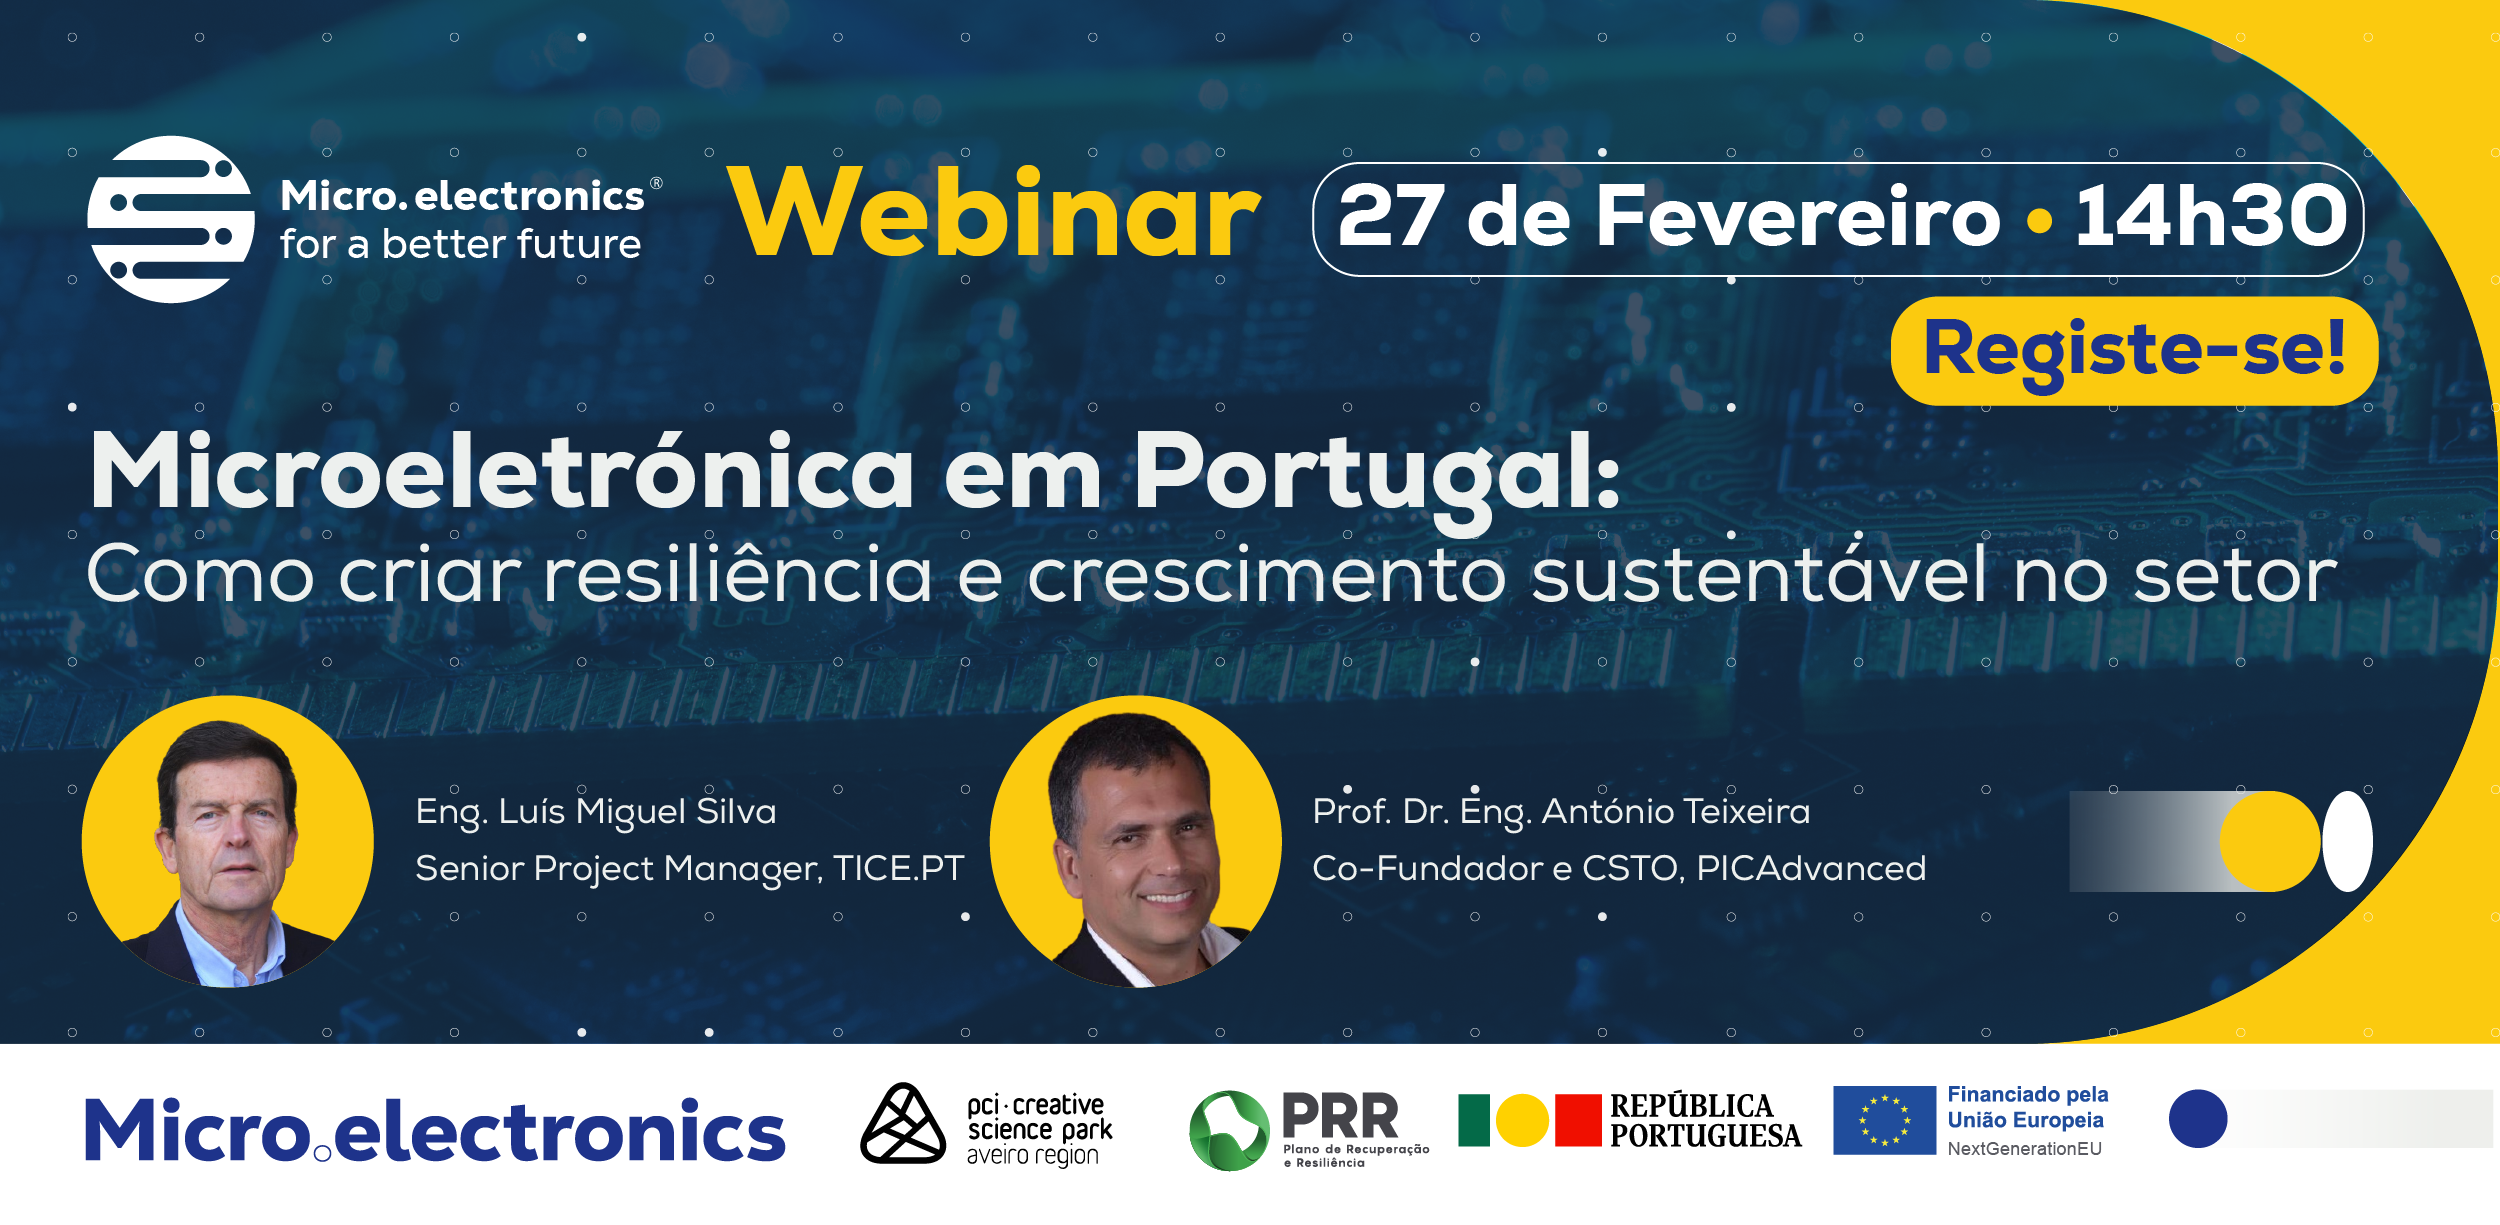 Webinar - Microeletrónica em Portugal: como criar resiliência e crescimento sustentável no setor